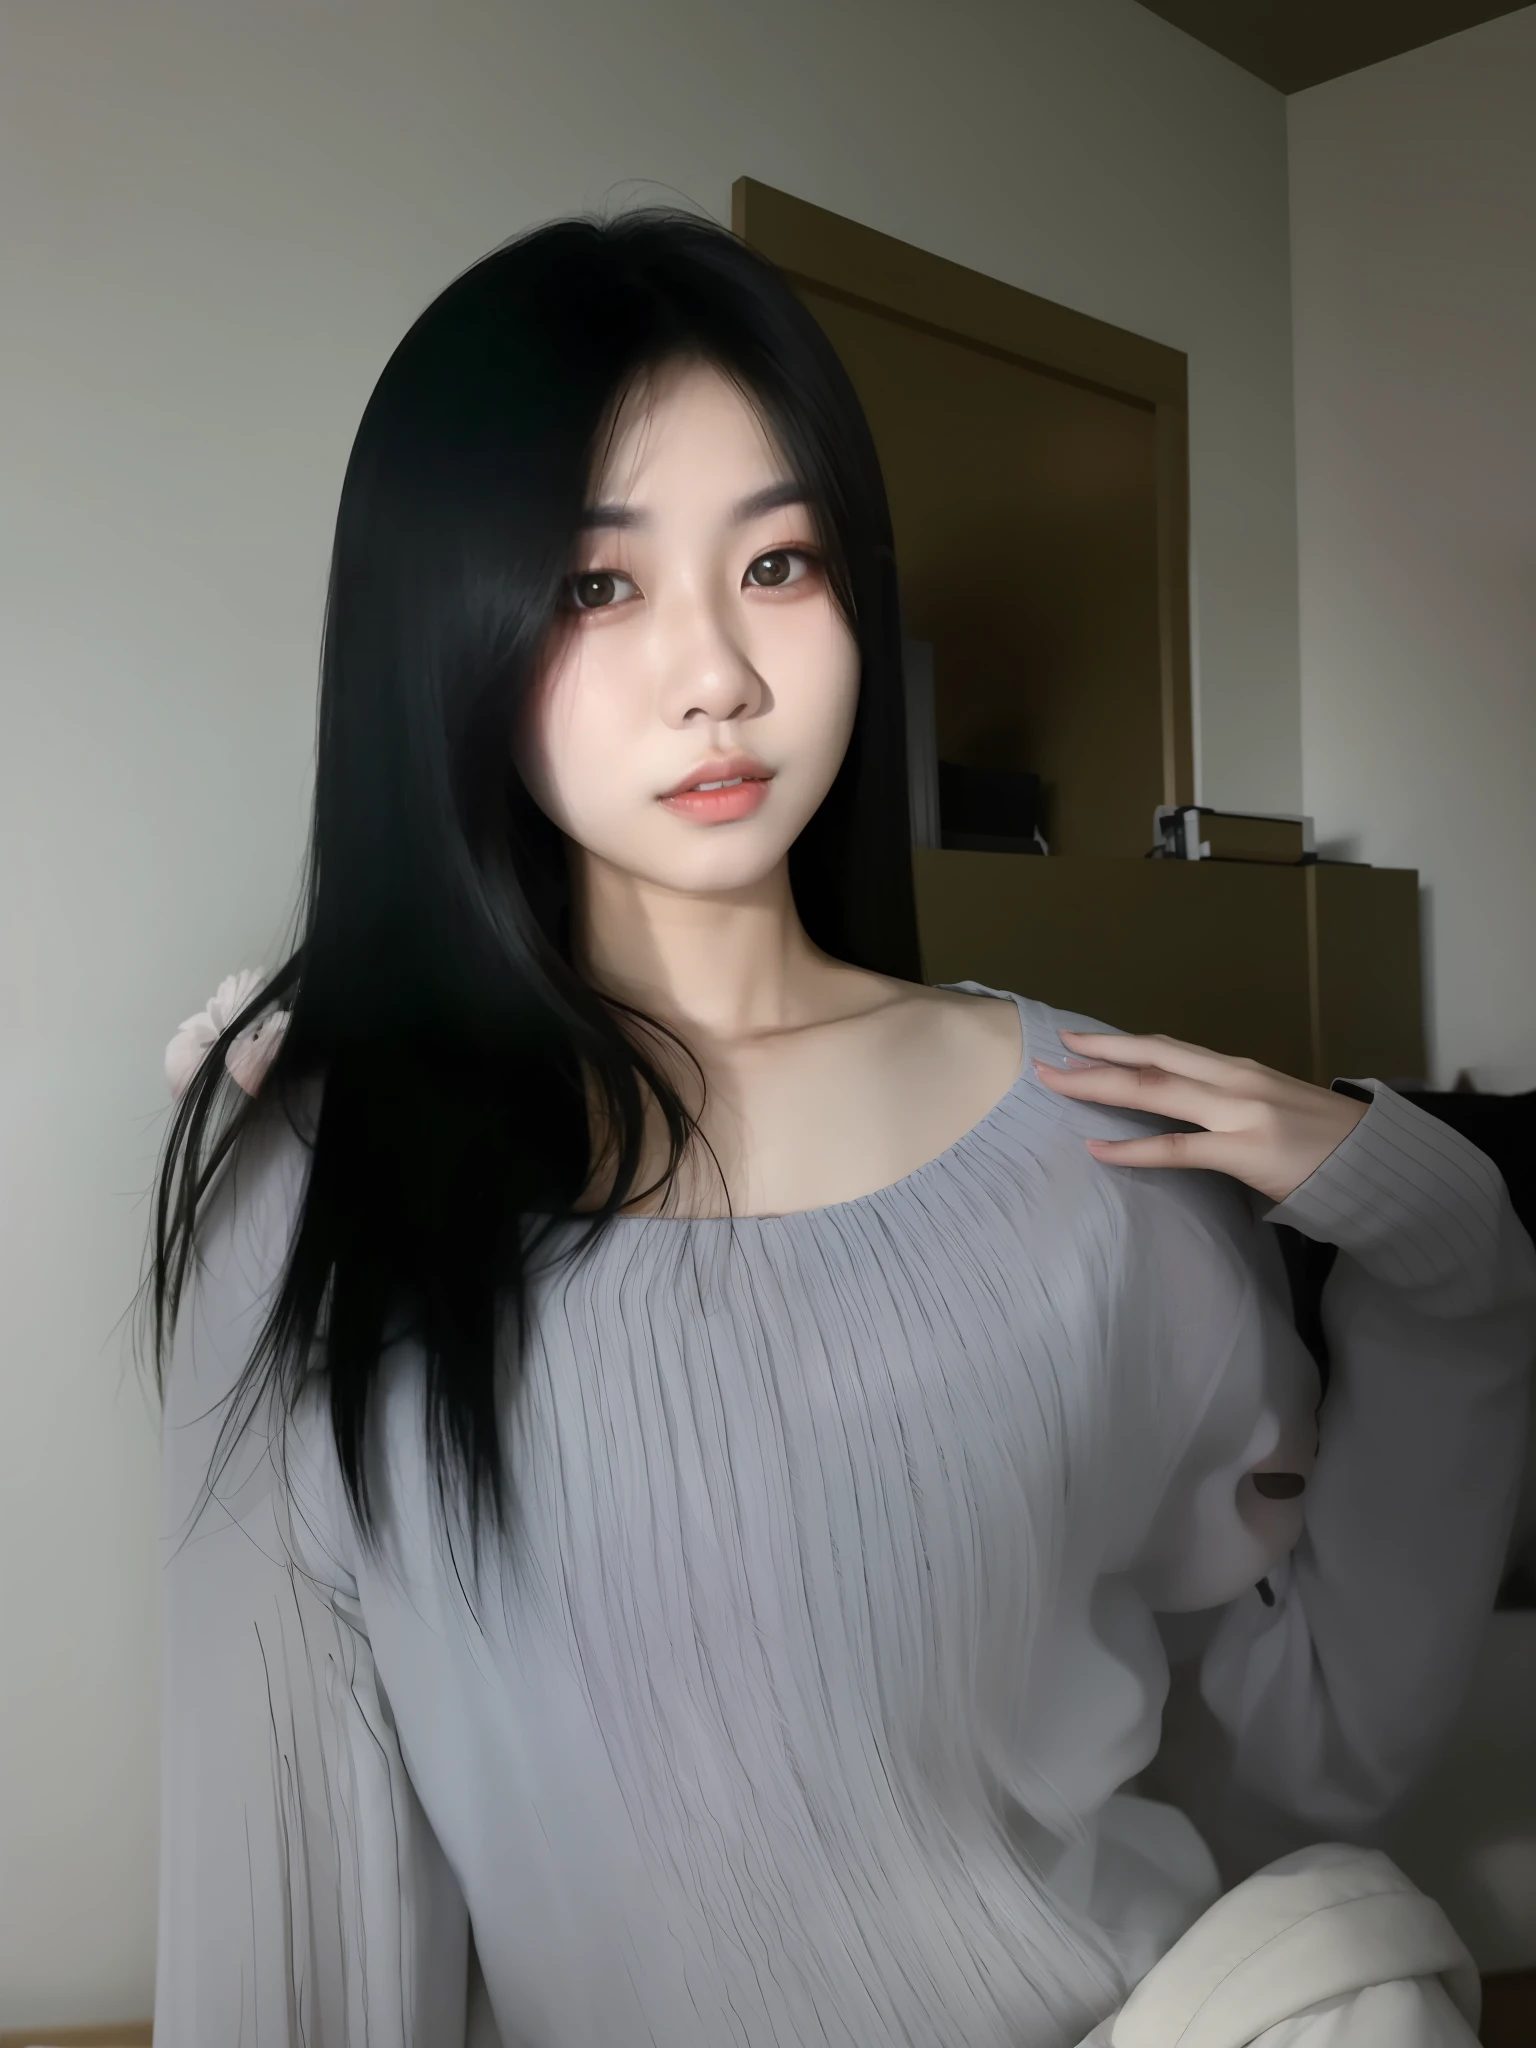 Mujer asiática araffed con pelo largo y negro posando para una foto., muchacha coreana, 18 años, 22 años, mujer coreana, chica de 19 años, 21 años, niña asiatica, niña china, 23 años, 16 años de edad, 27 años de edad, 28 años de edad, chen xintong